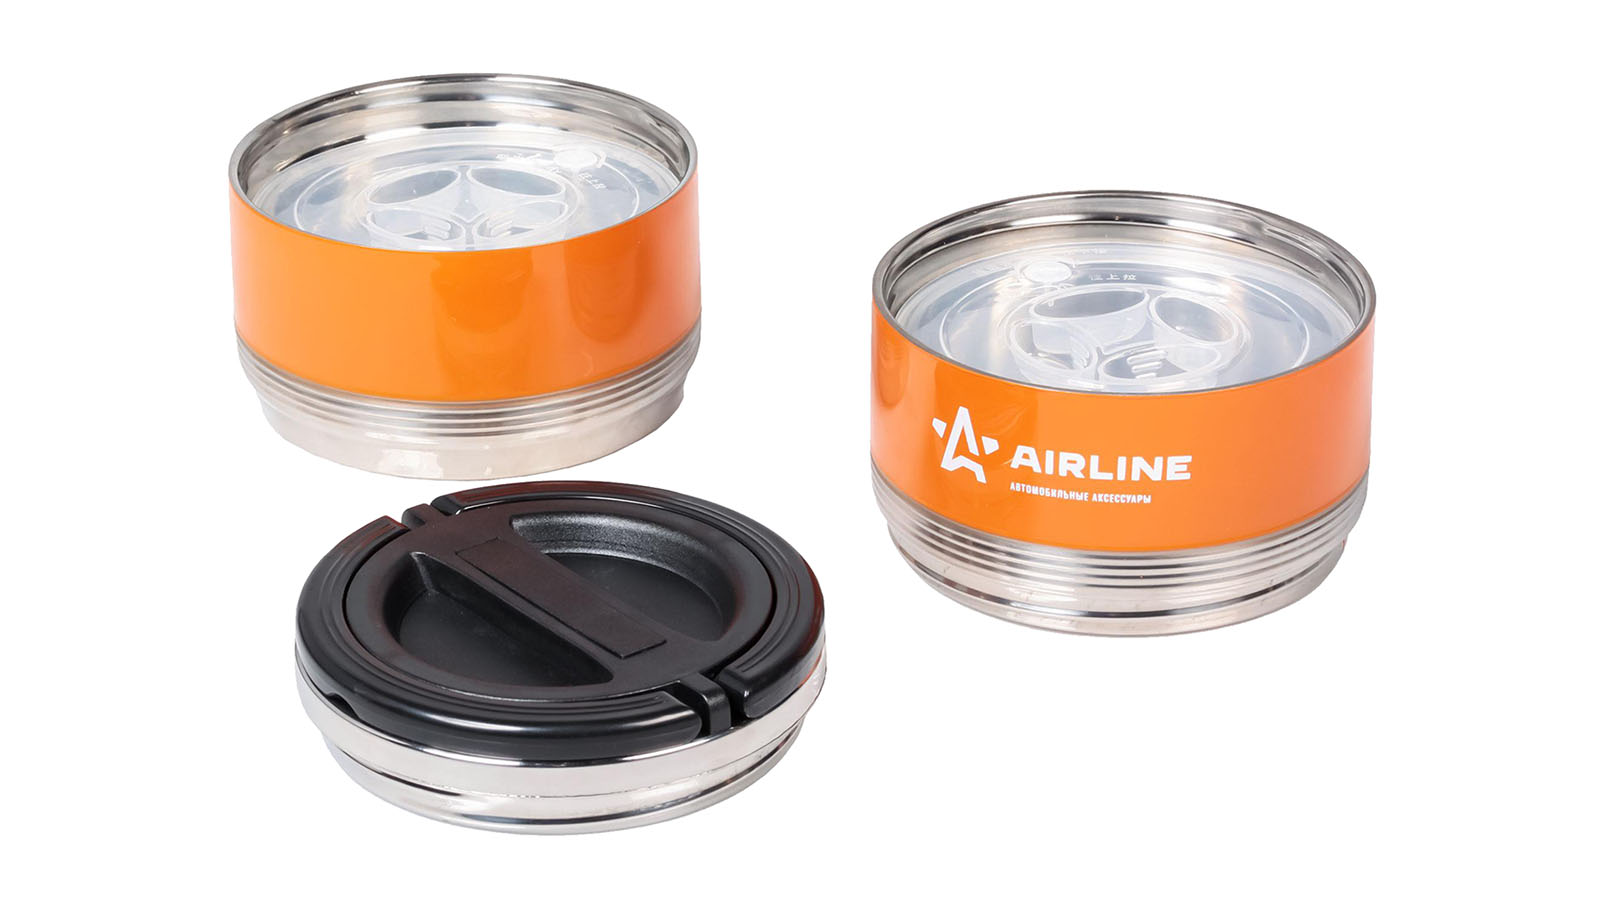 Термос AIRLINE ланч-бокс 1.4л, 2 контейнера с ручкой, нержавеющая сталь оранжево-черный фотография №3